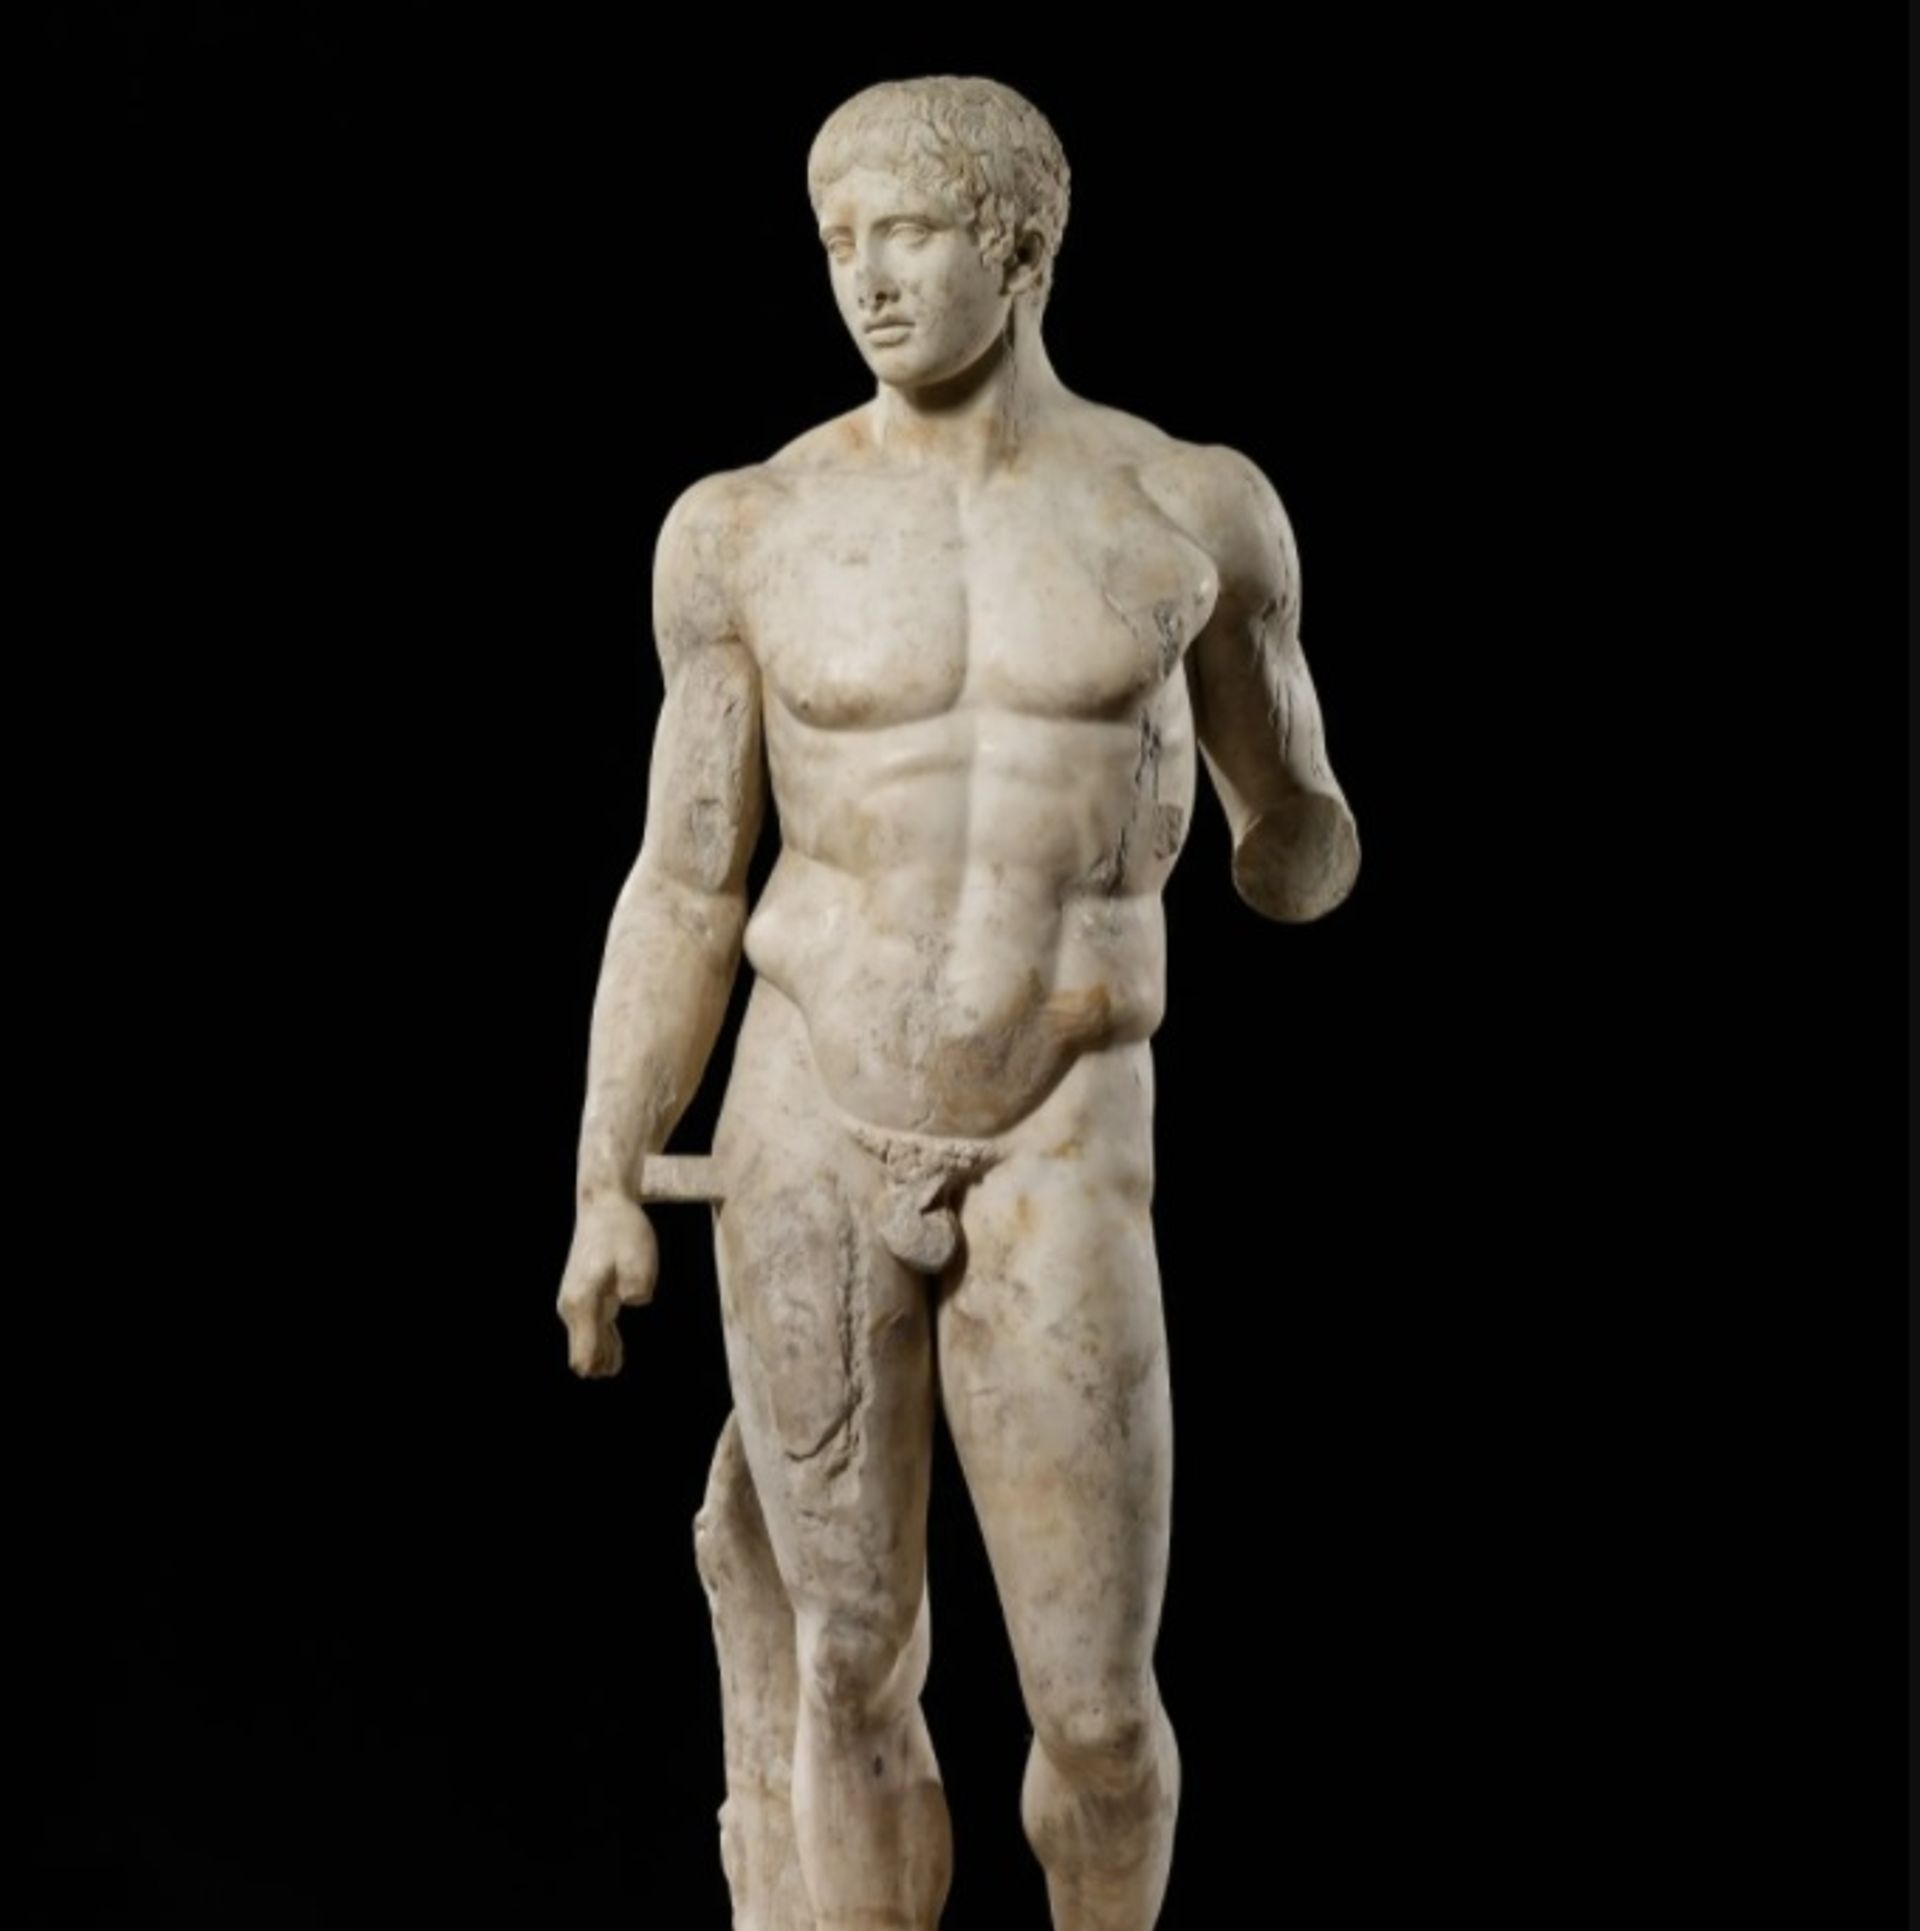 אמן רומי לא ידוע, The Doryphoros (27 לפנה"ס-68 לספירה)

באדיבות מכון מיניאפוליס לאמנות